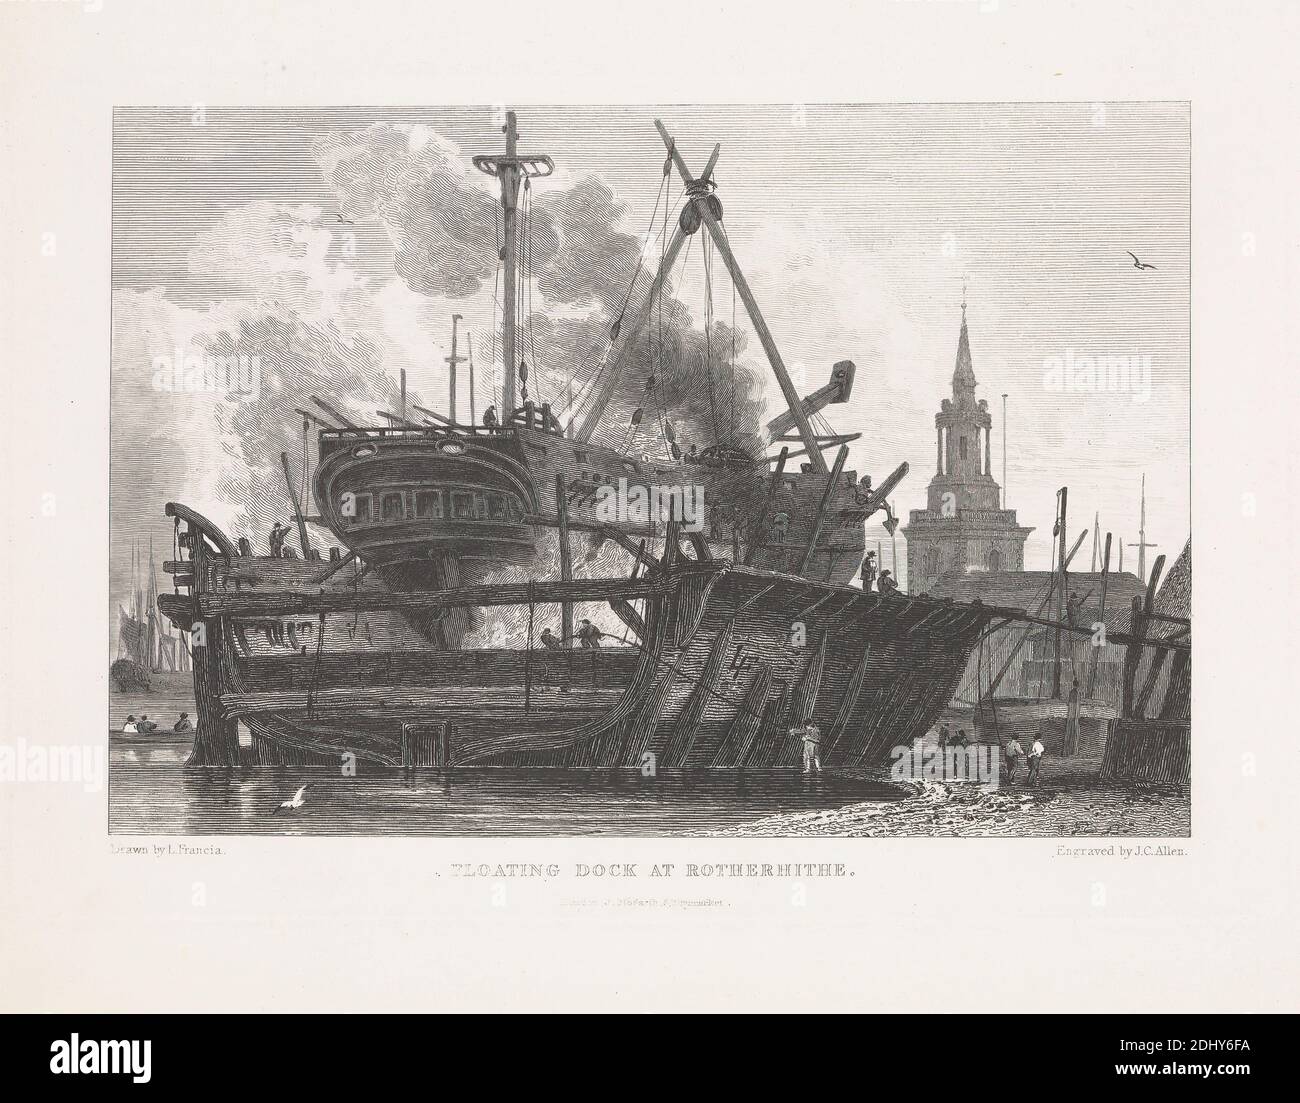 Floating Dock at Rotherhithe, James C. Allen, aktiv 1821–1831, britisch, nach François Louis Thomas Francia, 1772–1839, französisch, in Großbritannien aktiv, undatiert, Gravur auf glattem, mäßig dickem, weißem Wove-Papier, Blatt: 8 5/16 × 10 3/8 Zoll (21.1 × 26.4 cm), Platte: 6 3/8 × 9 1/2 Zoll (16.2 × 24.1 cm) und Bild: 5 1/2 × 8 1/8 Zoll (14 × 20.6 cm Stockfoto